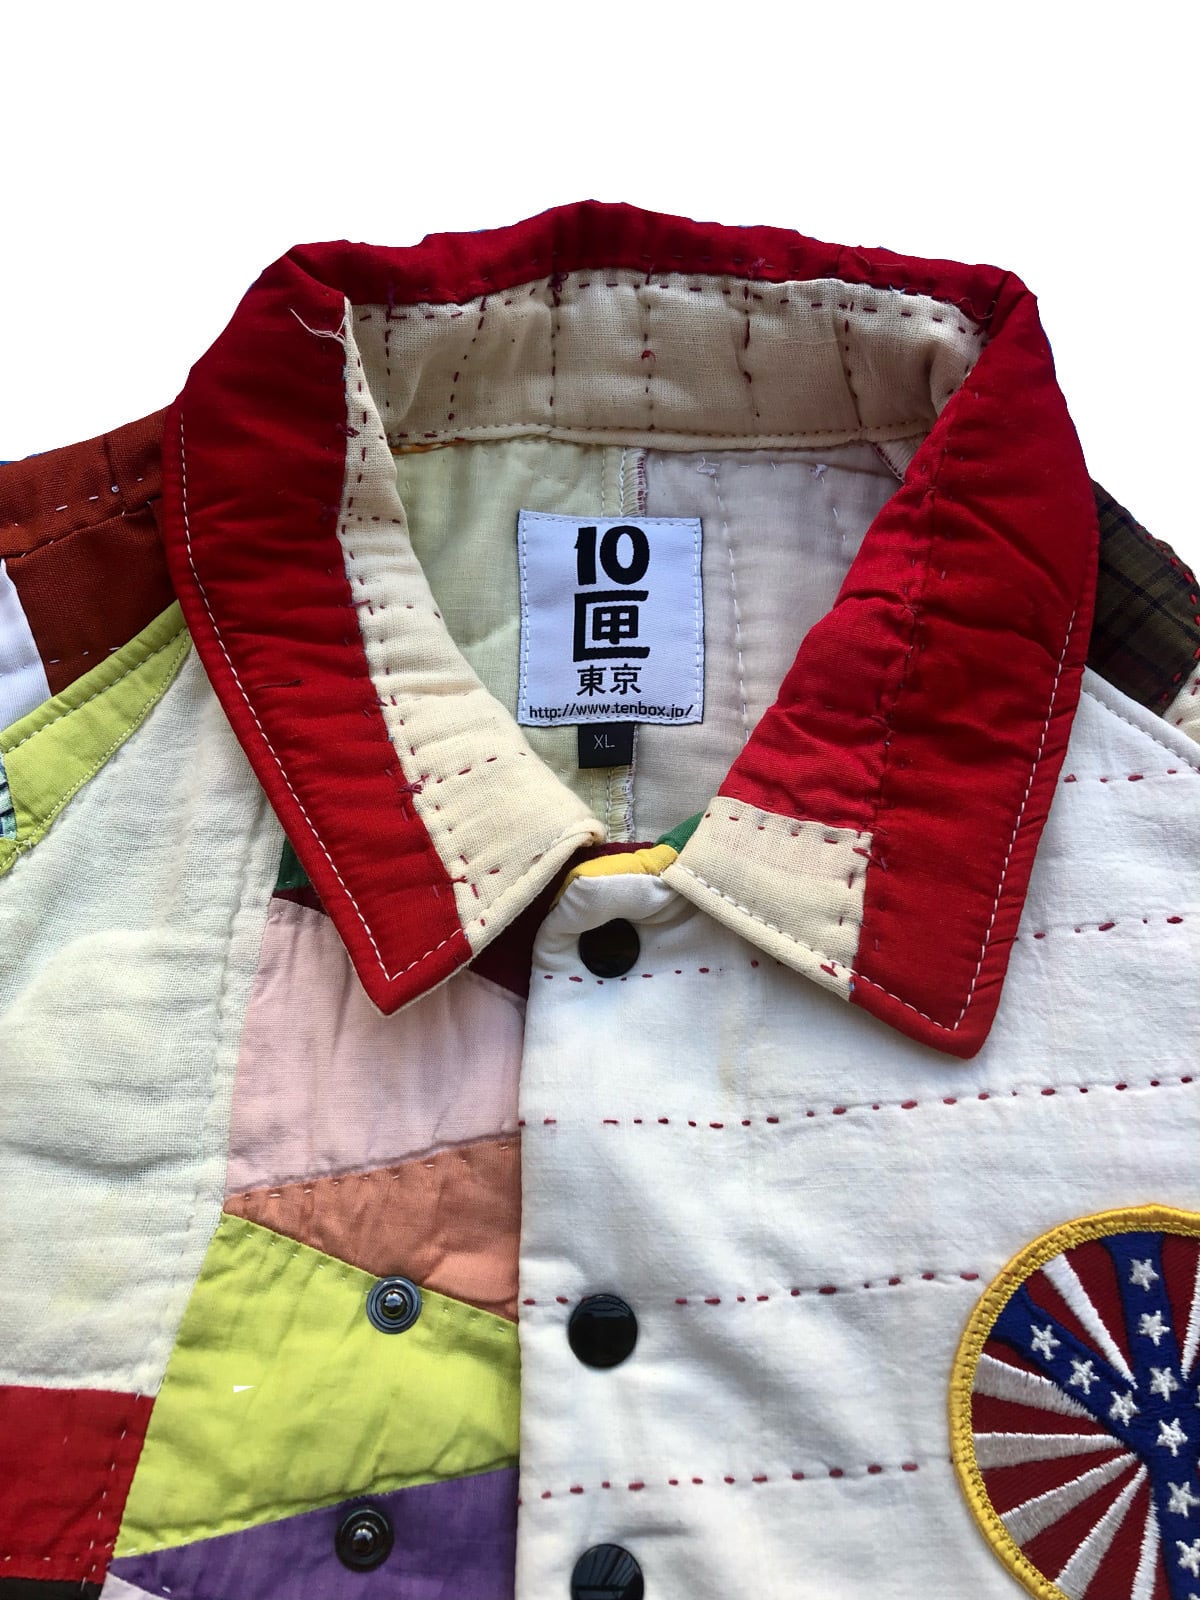 10匣 tenbox vintage quilt jacketL=671464862 - その他